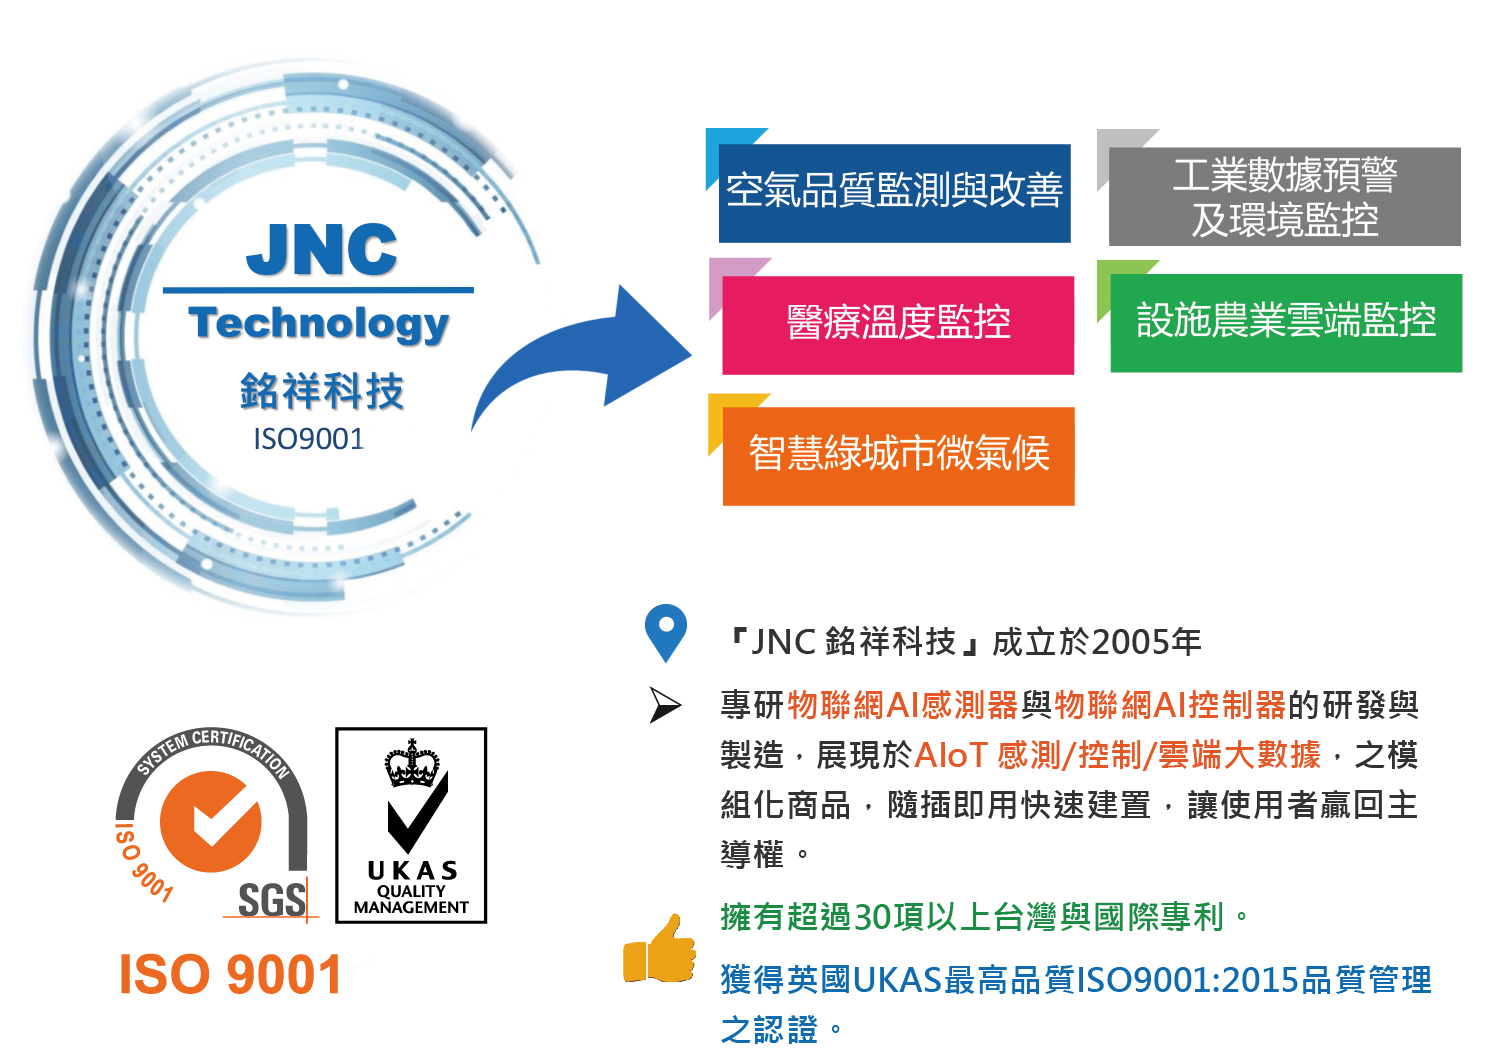 關於JNC銘祥科技